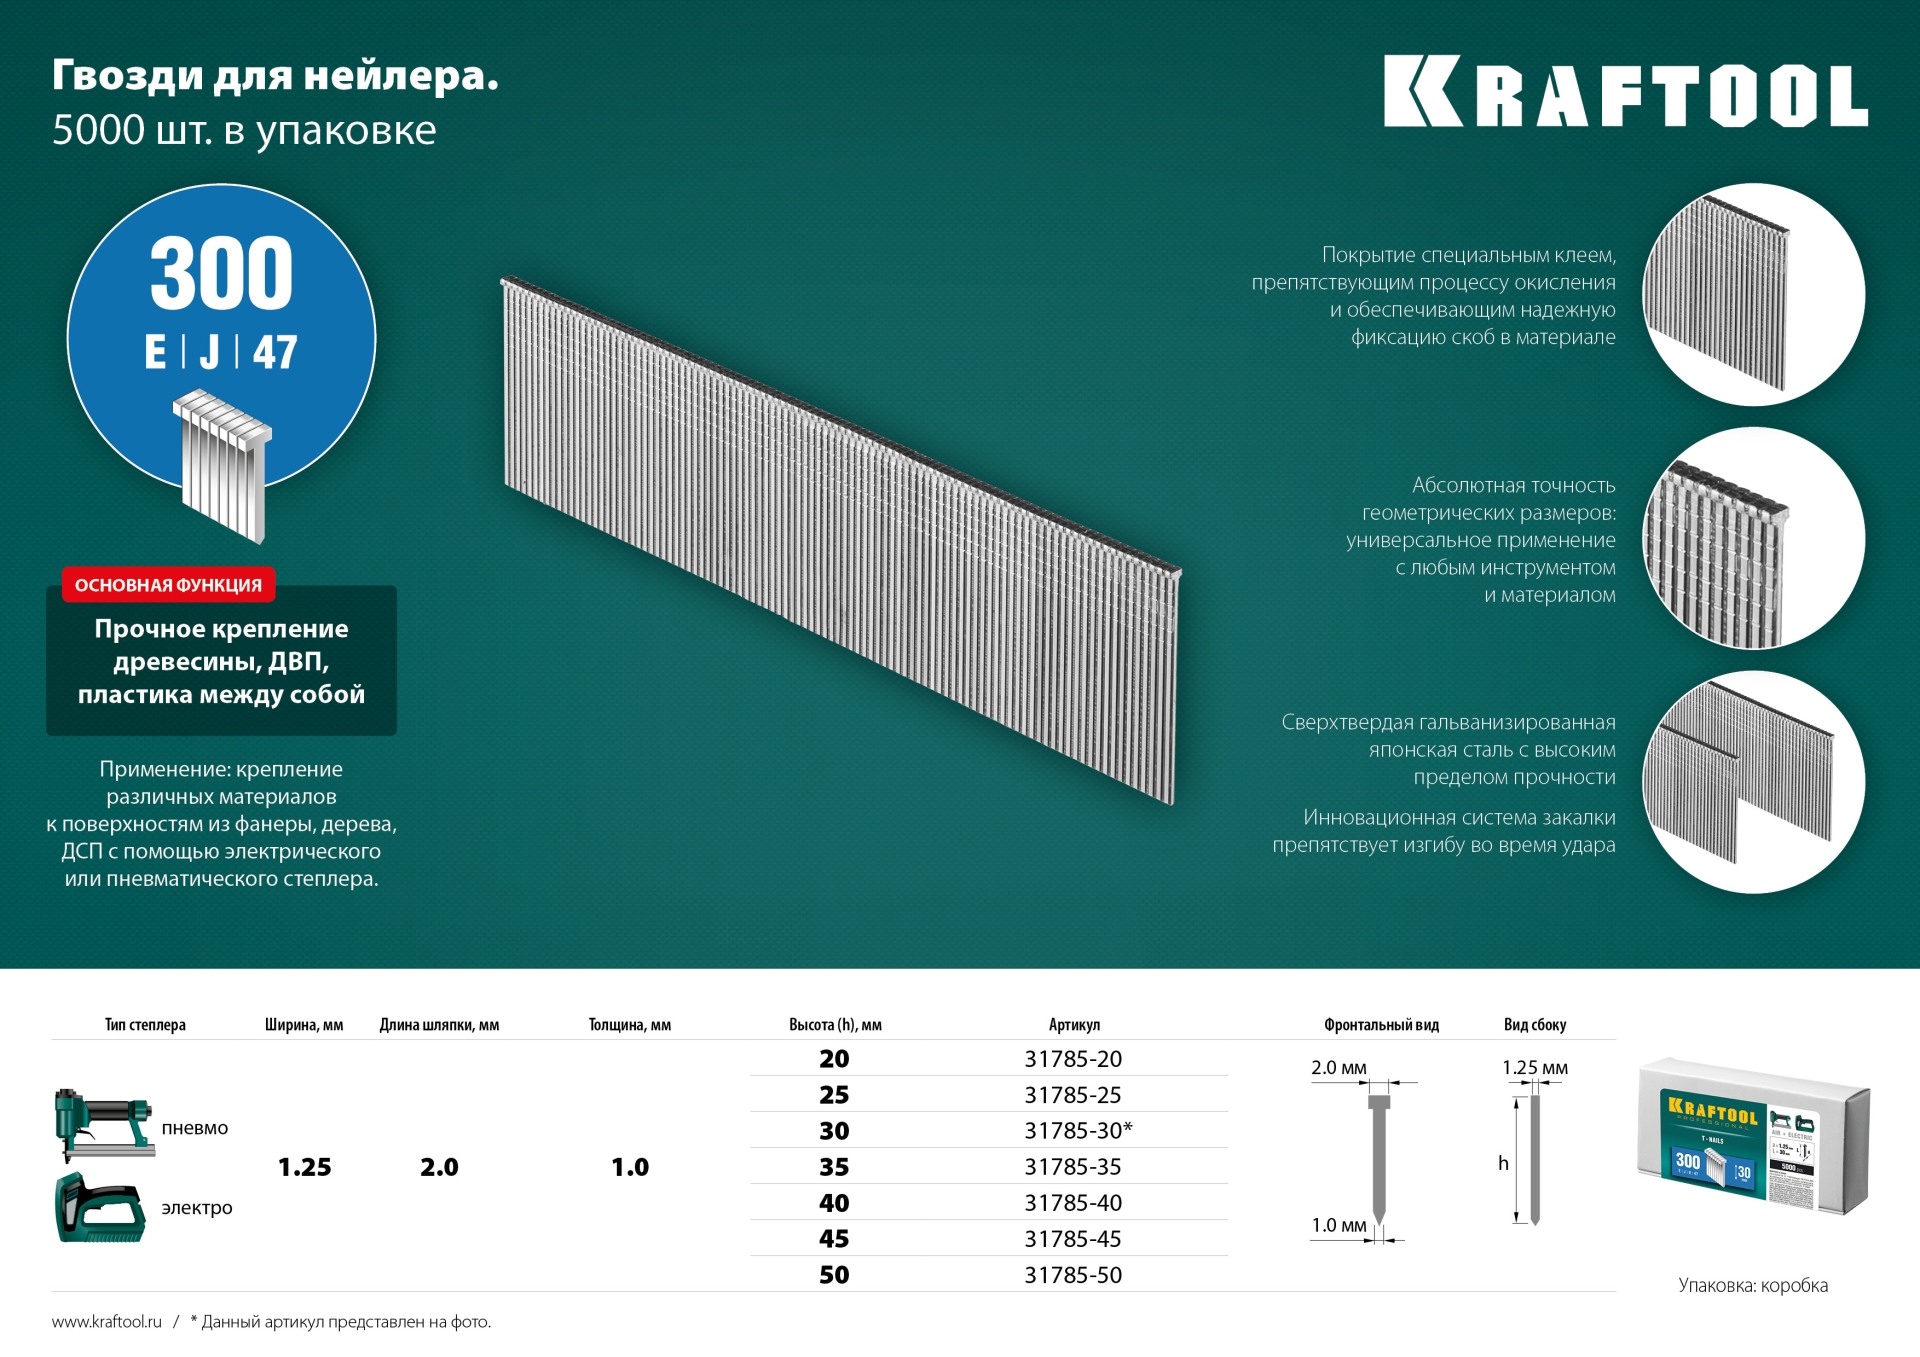 KRAFTOOL тип 18GA (47/300/F) 40 мм, 5000 шт, гвозди для нейлера (31785-40)